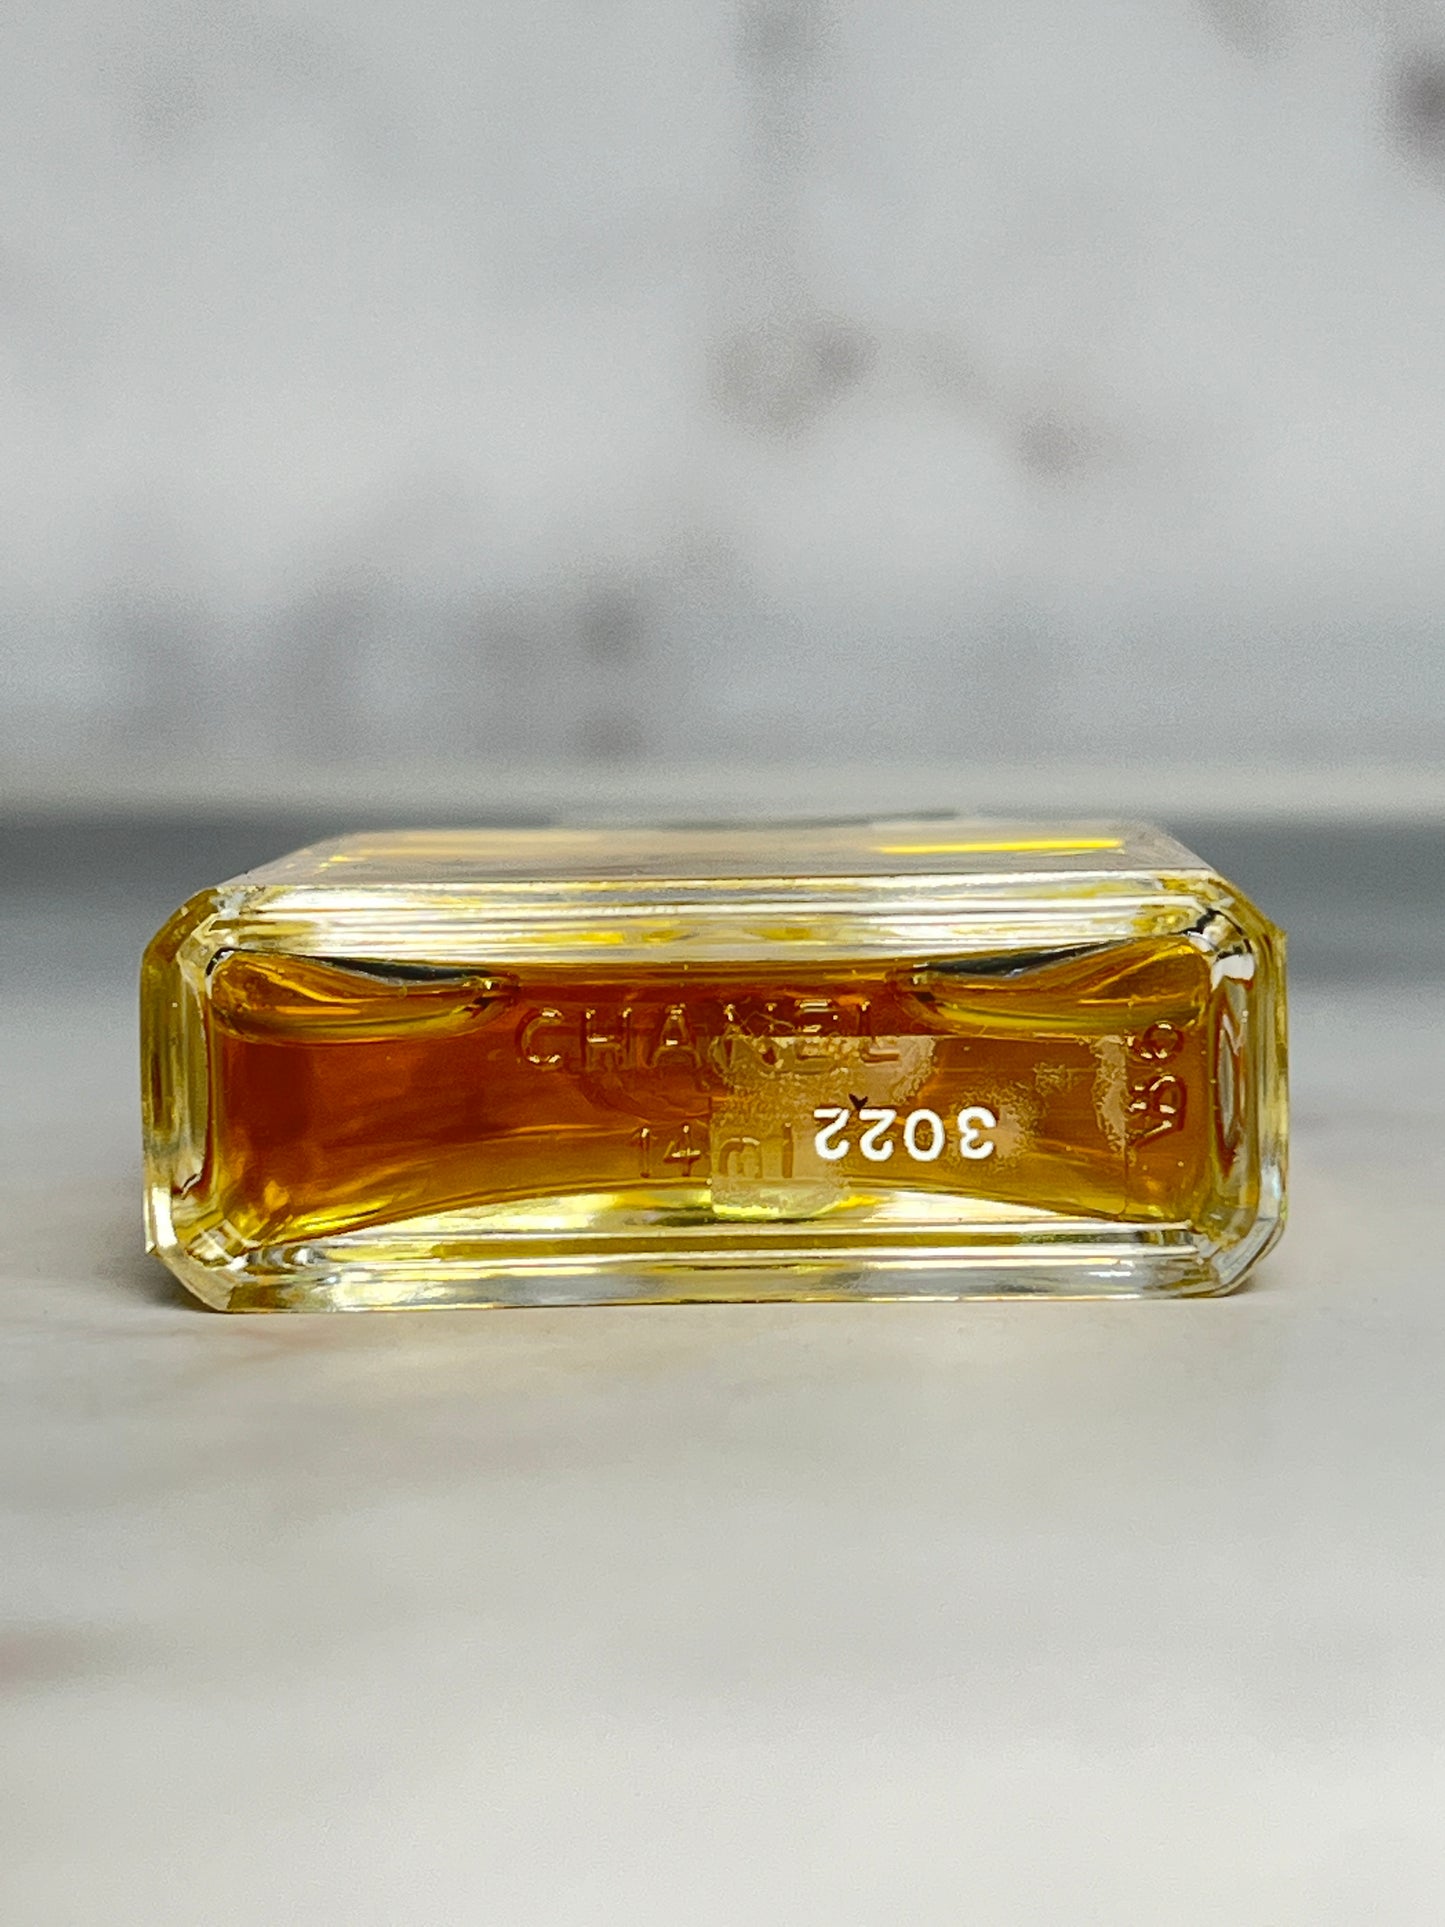 Rare Chanel No.5 14ml 1/2 oz Parfum Perfume  - 180723-24